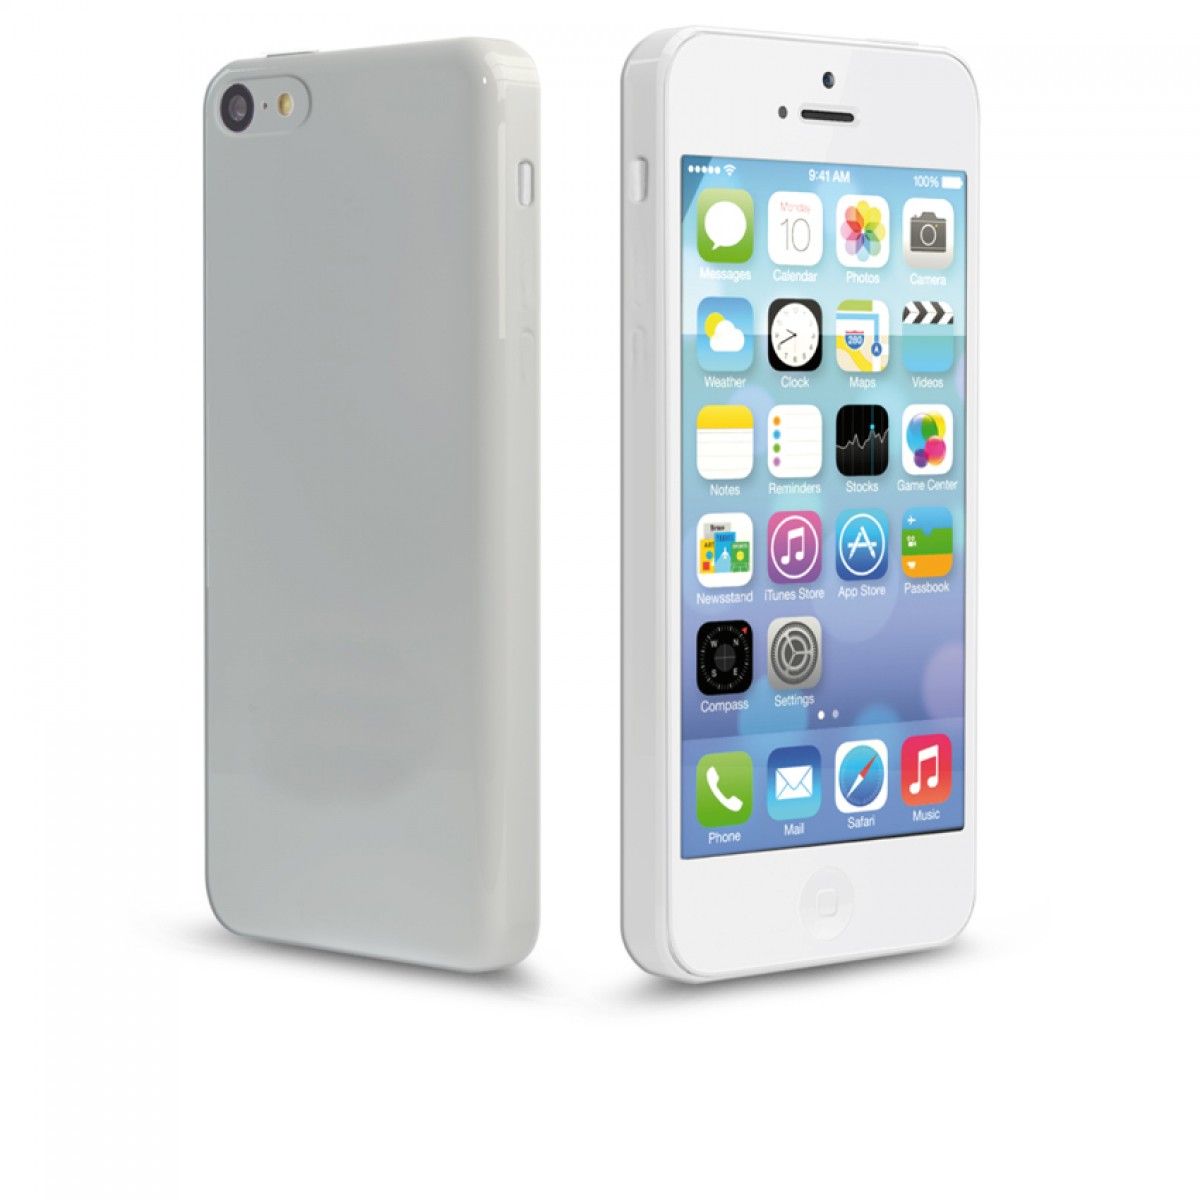 APPLE iPHONE 5C 16GB WHITE